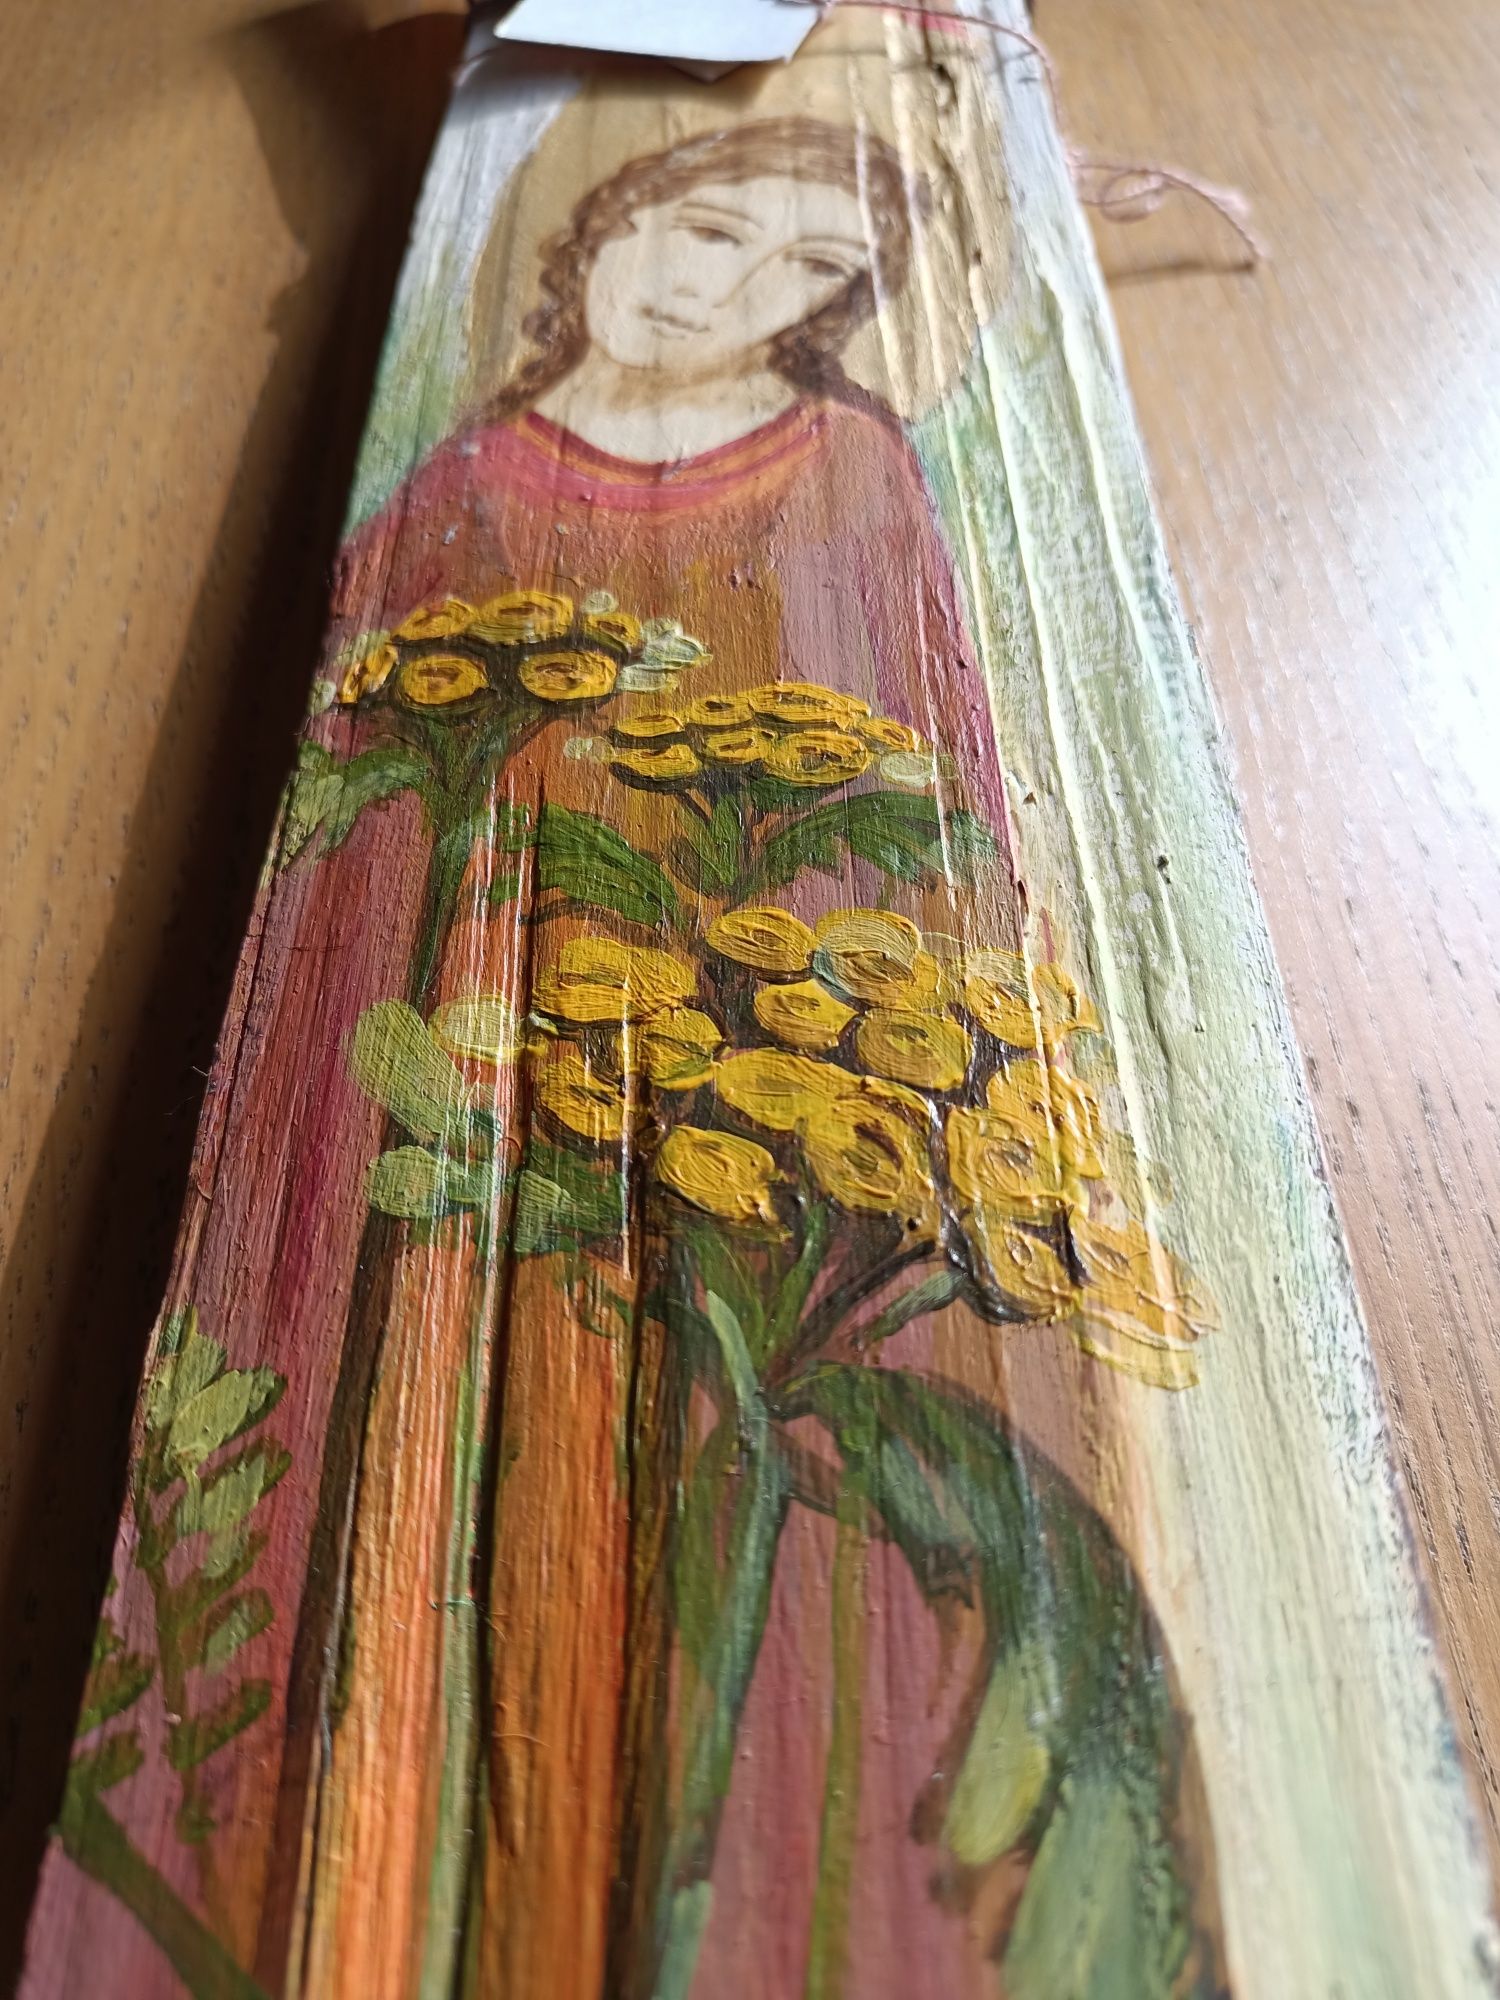 Anioł malowany na goncie łupanym z drewna jodłowego